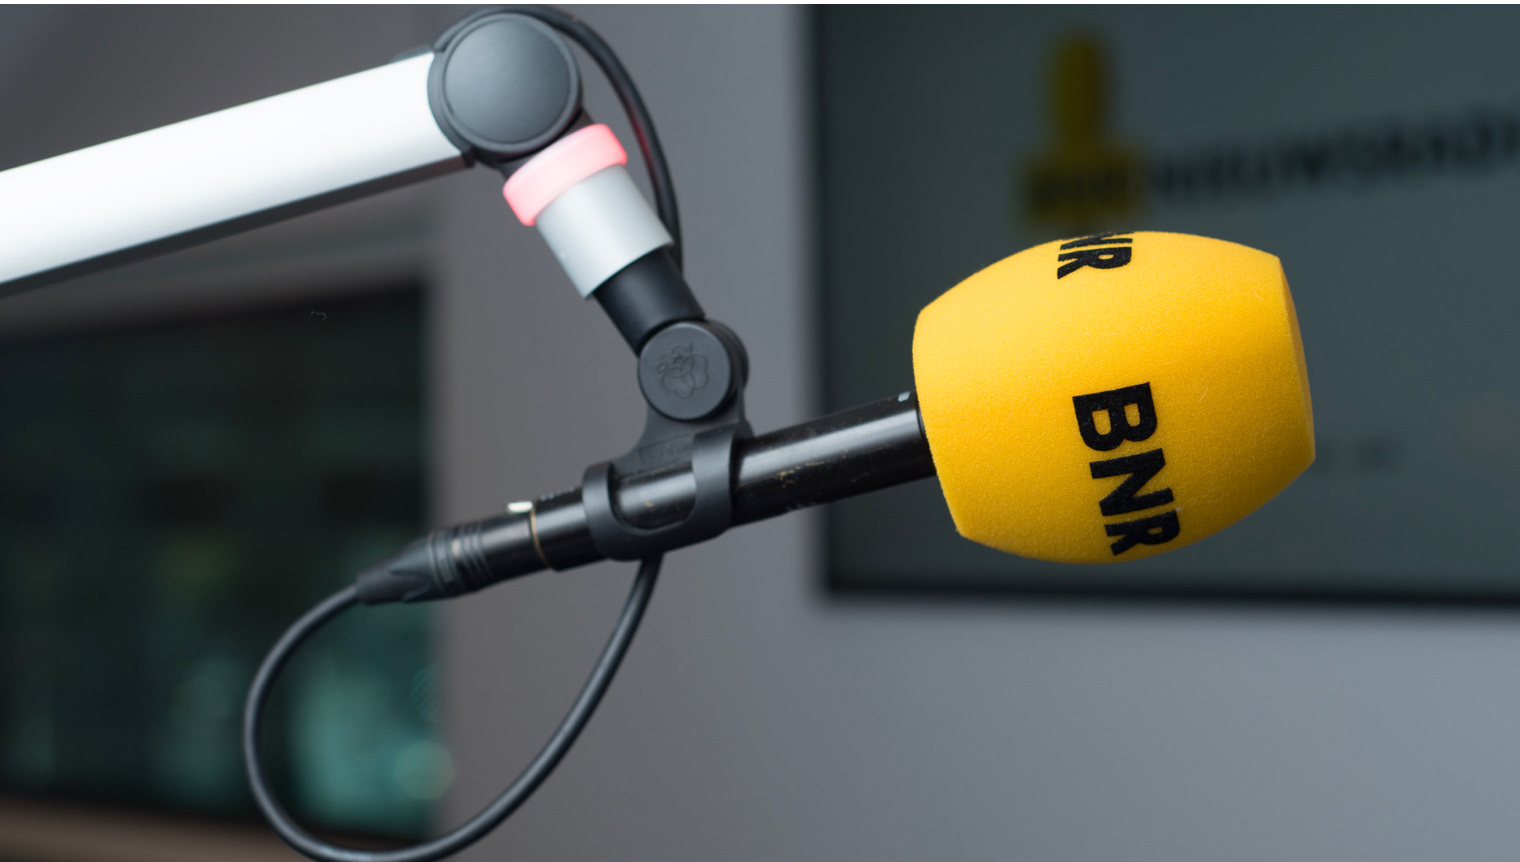 Screen BNR Nieuwsradio